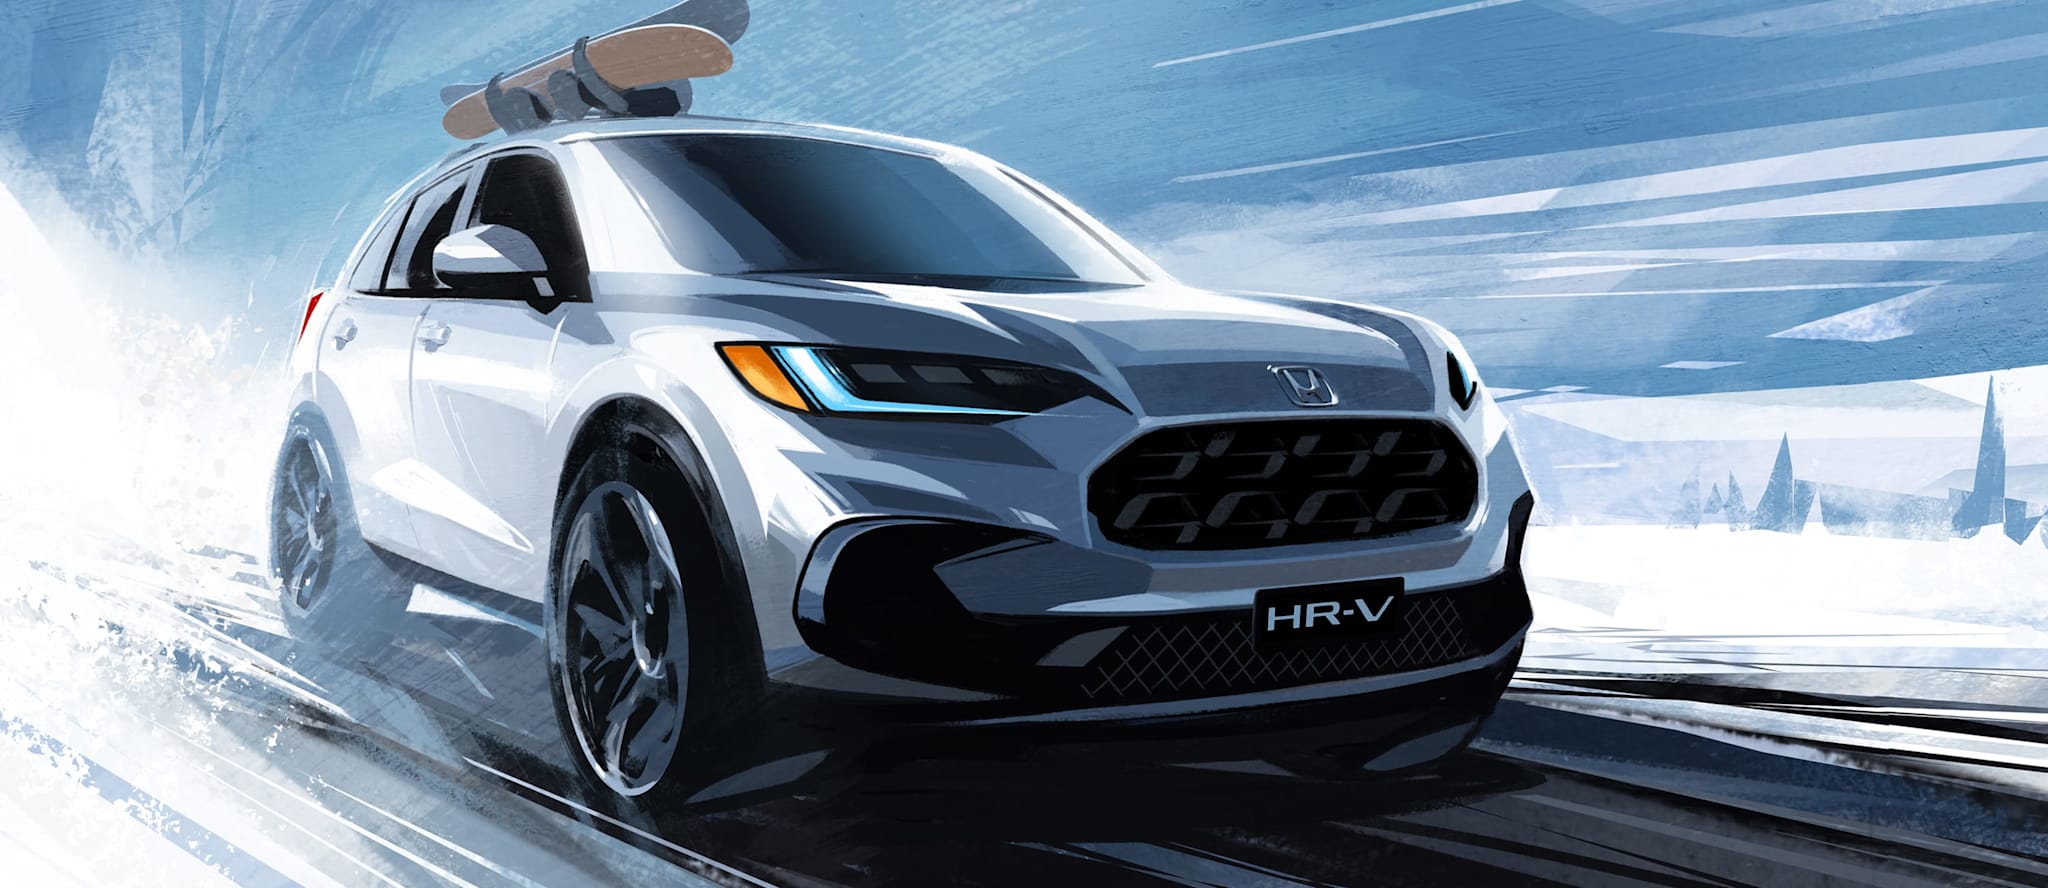 2023 年本田 HR-V 以不同的外观迎合美国市场